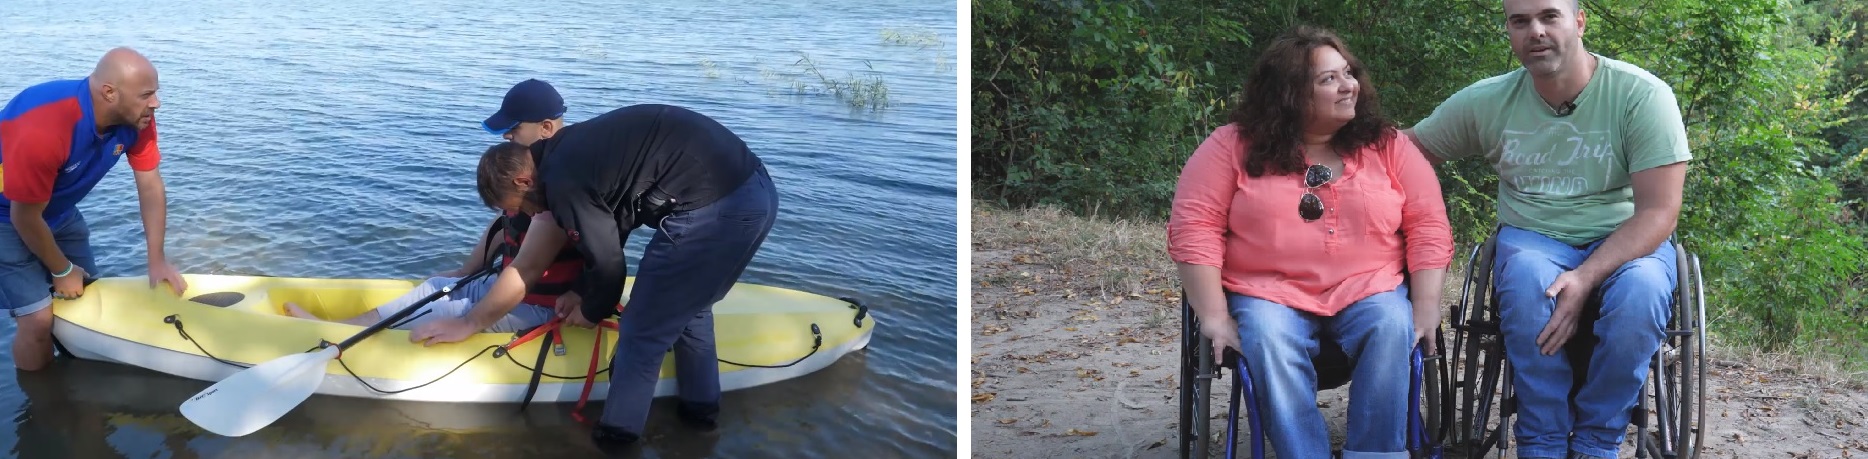 Datorită lui Dan, persoanele cu dizabilități se pot bucura de libertatea de mișcare pe apă